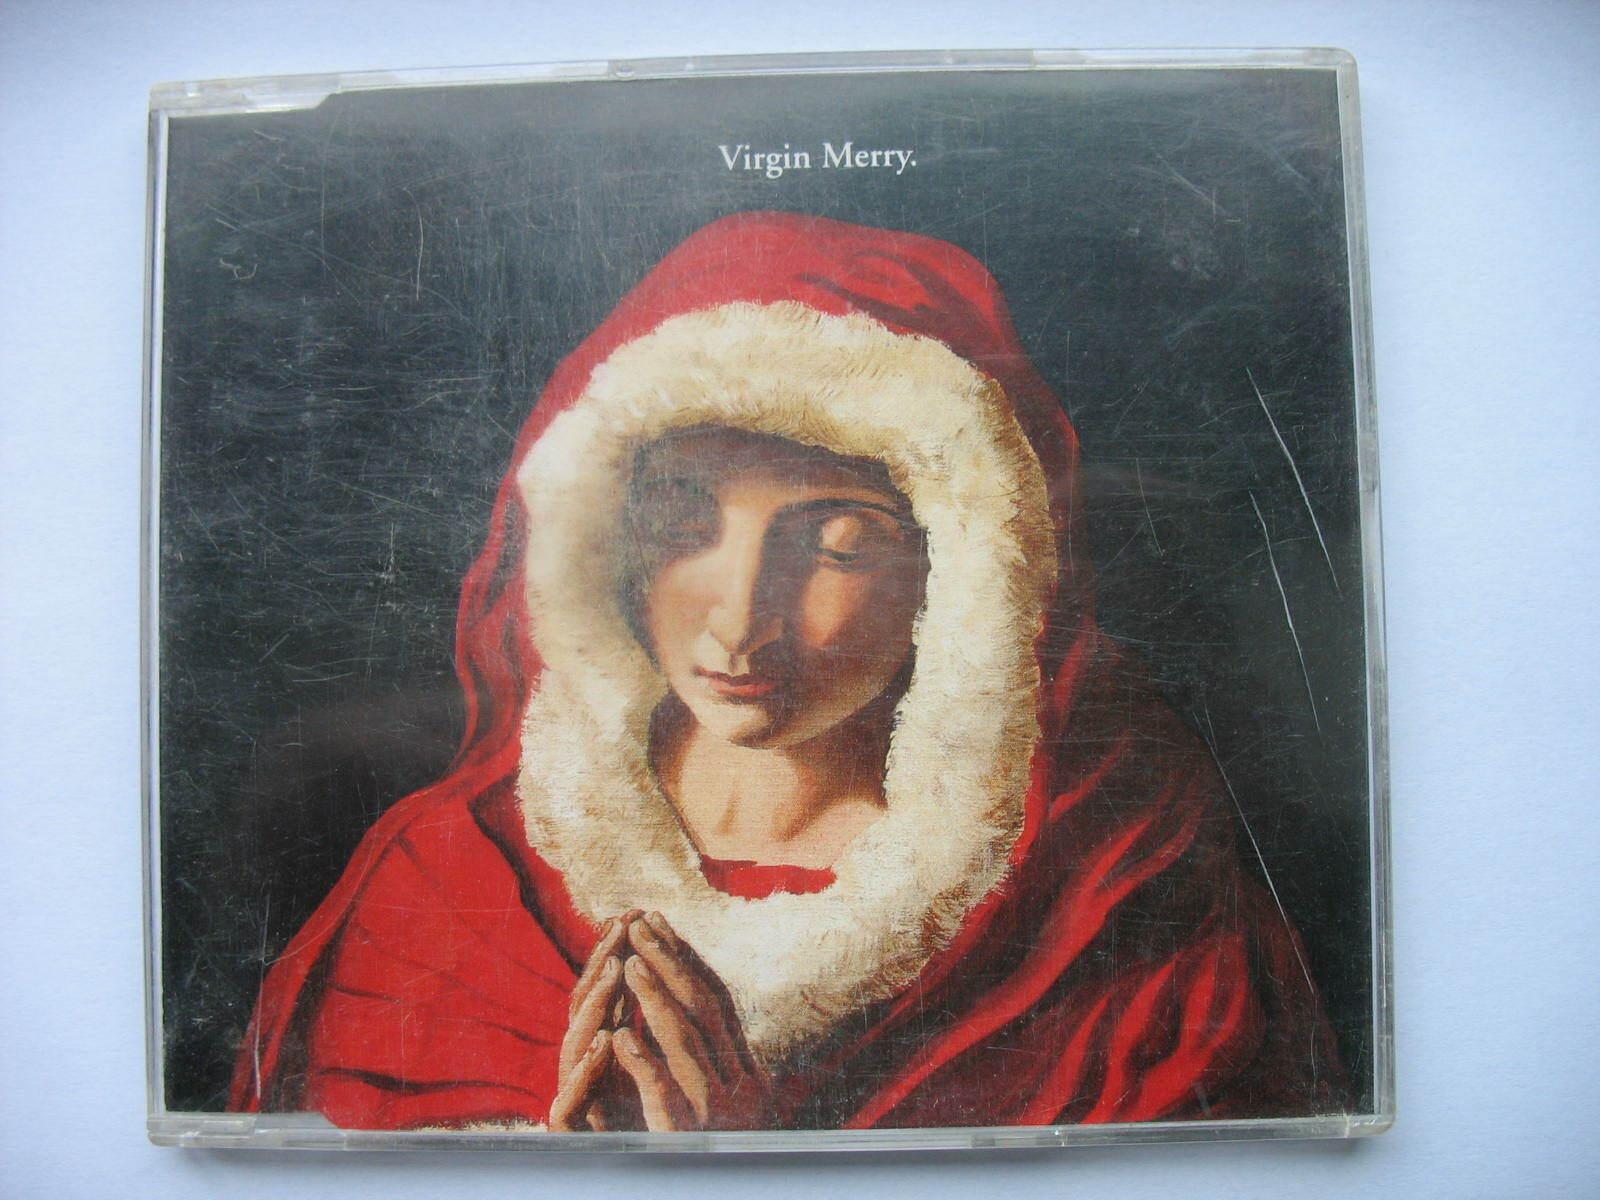 V/A-VIRGIN MERRY, THE BEST XMAS EVER. PROMO CD ALBUM. SOUL II SOUL,UB40,MEATLOAF